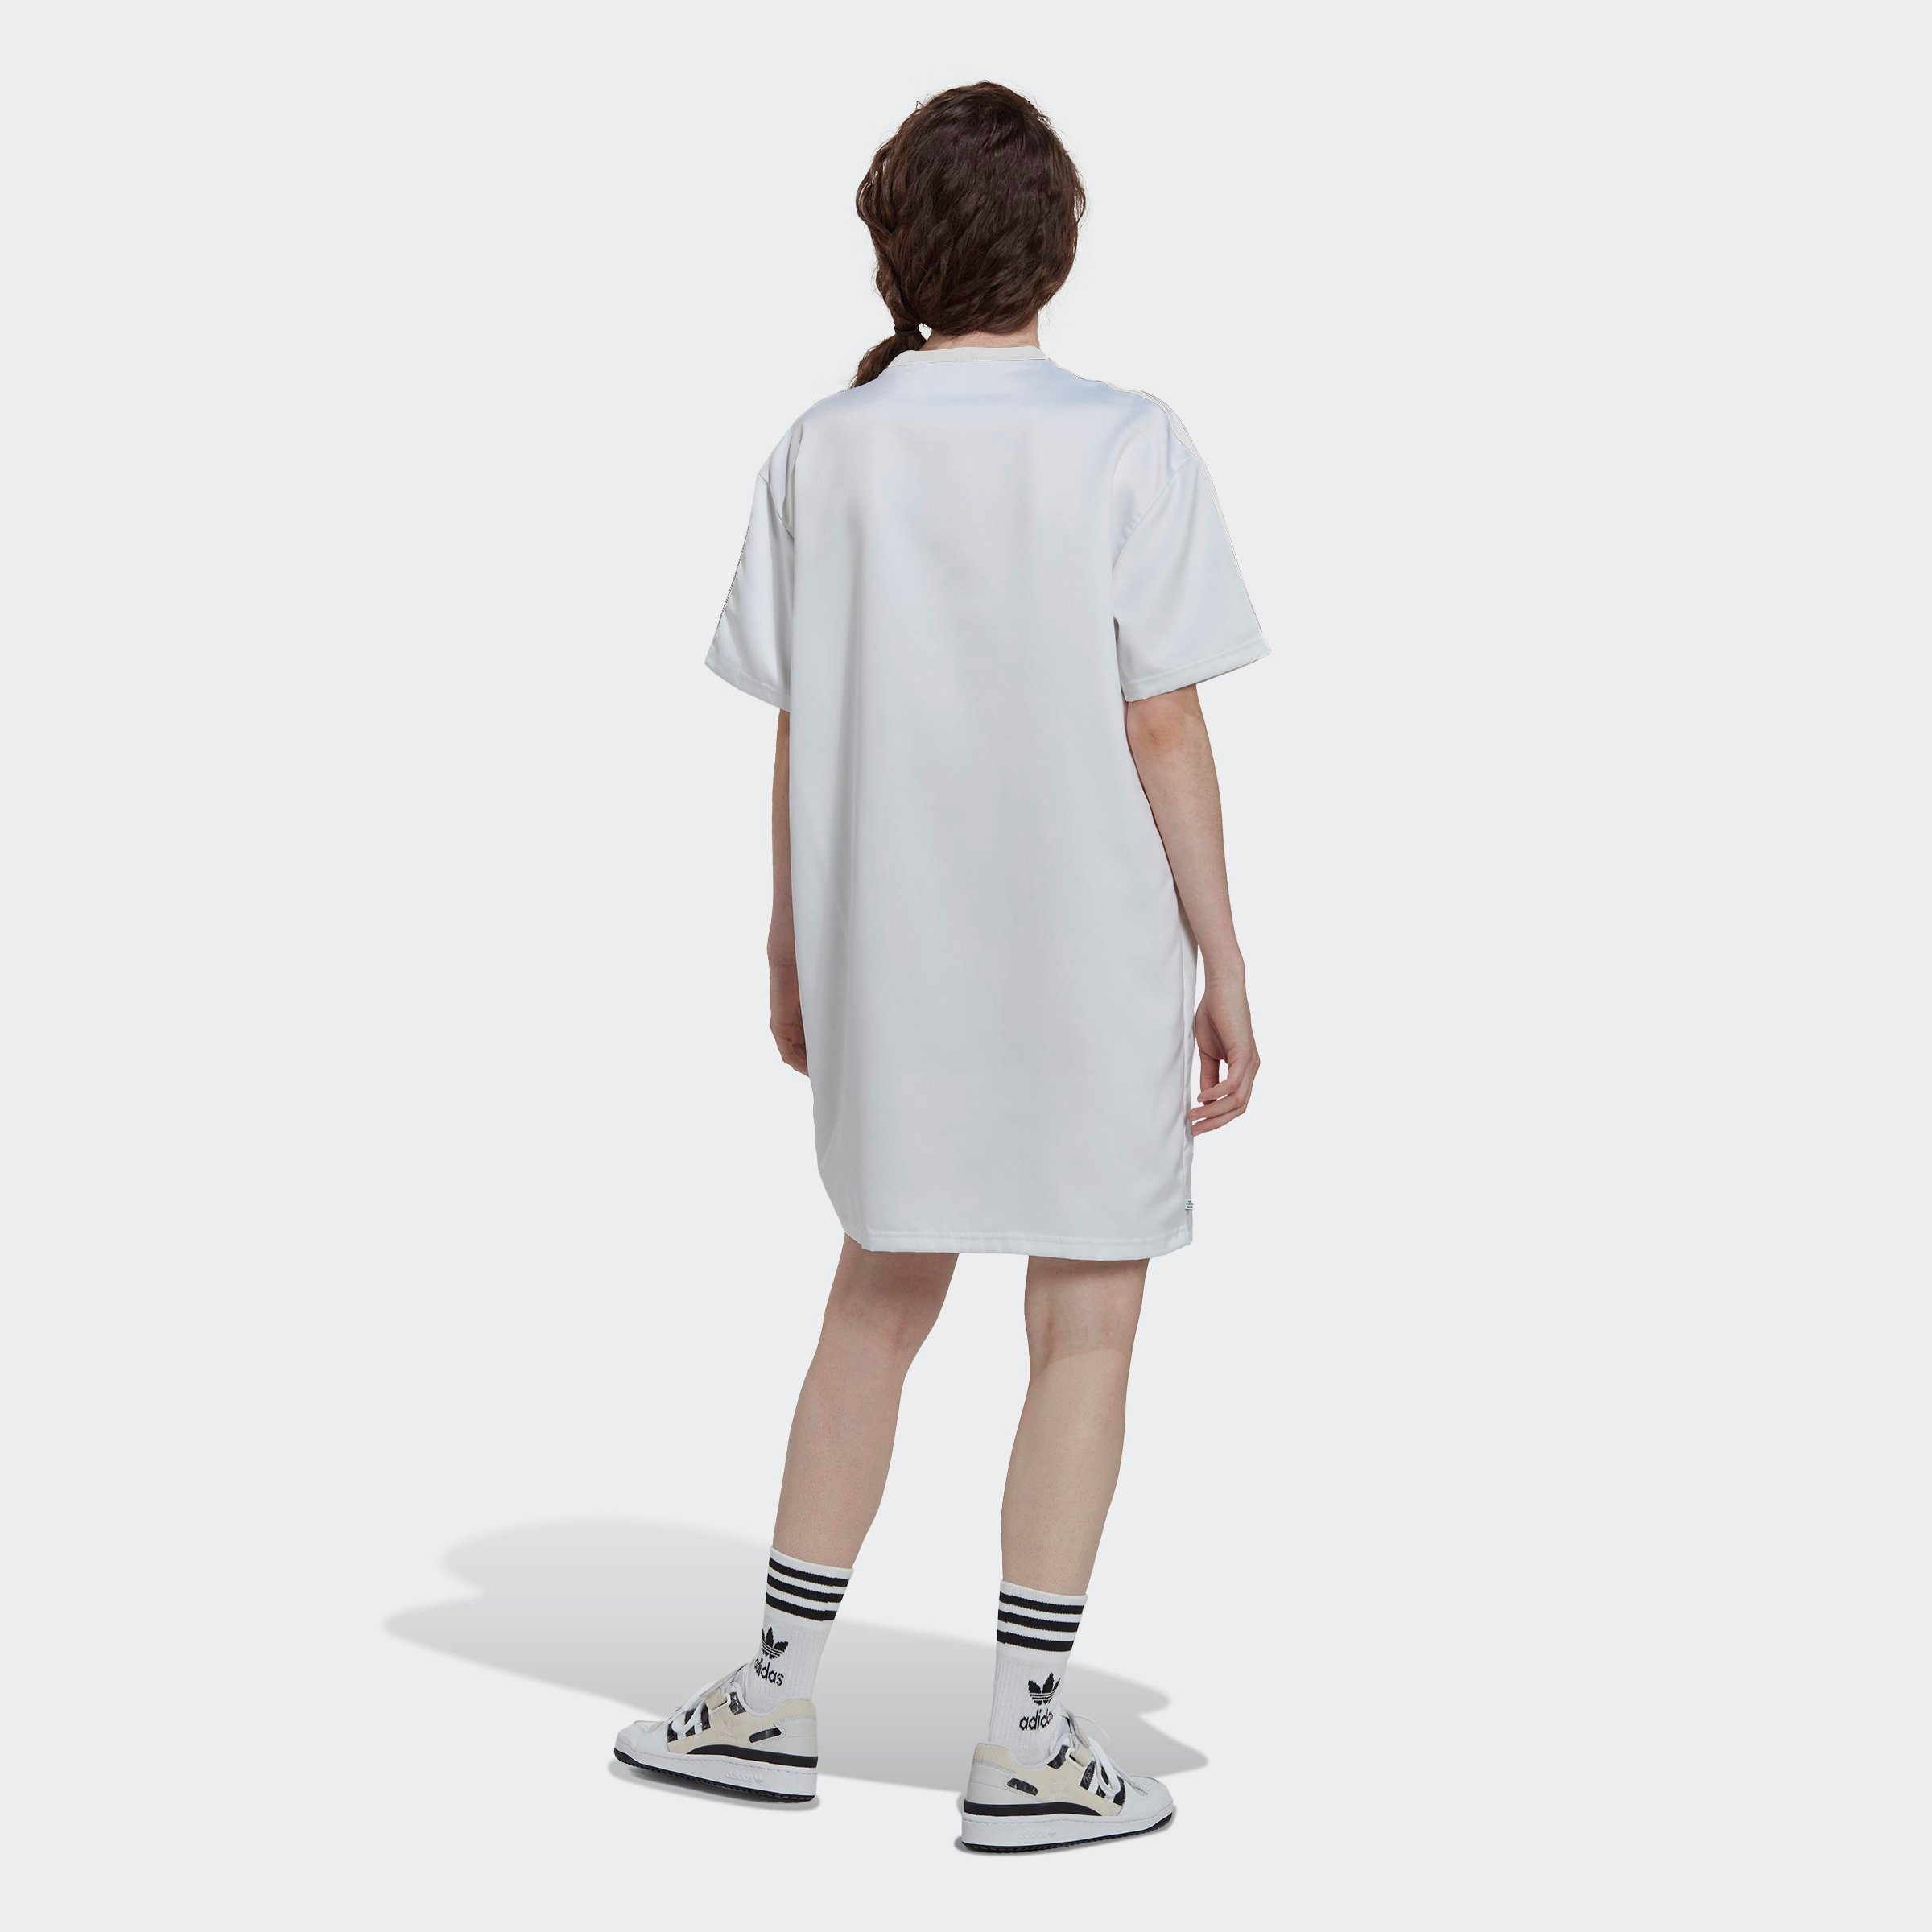 ALWAYS -KLEID ORIGINAL Originals LACED Sommerkleid WHITE adidas